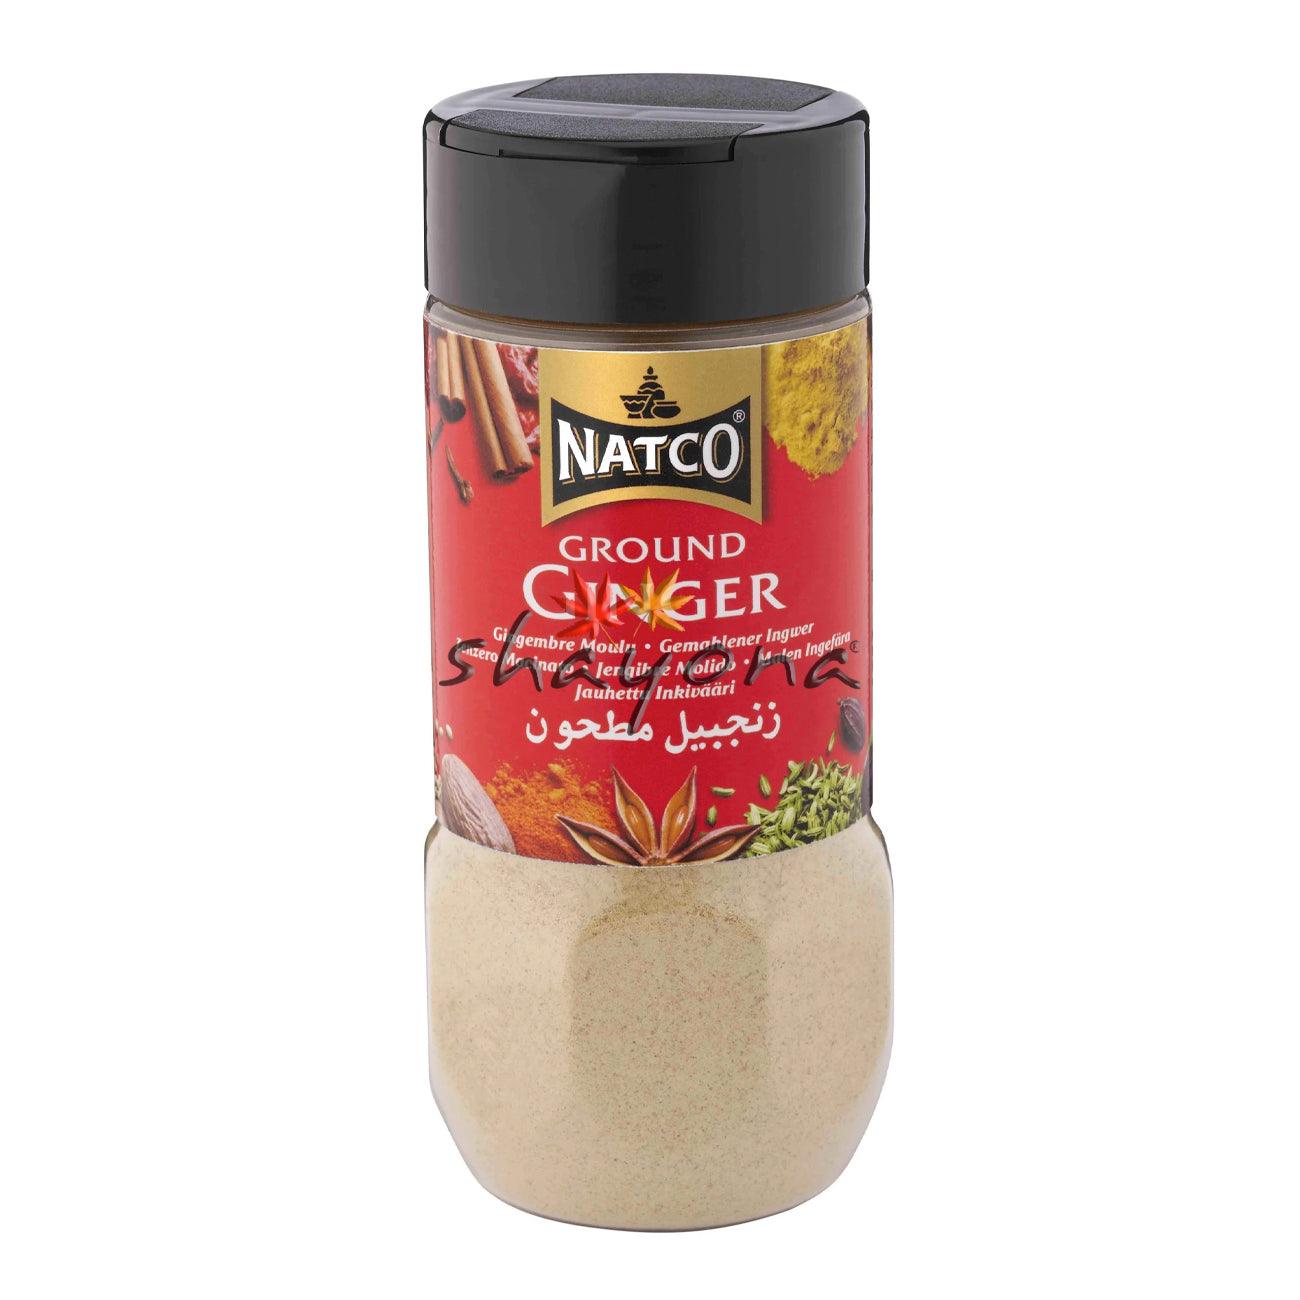 Natco Ground Ginger - Shayona UK